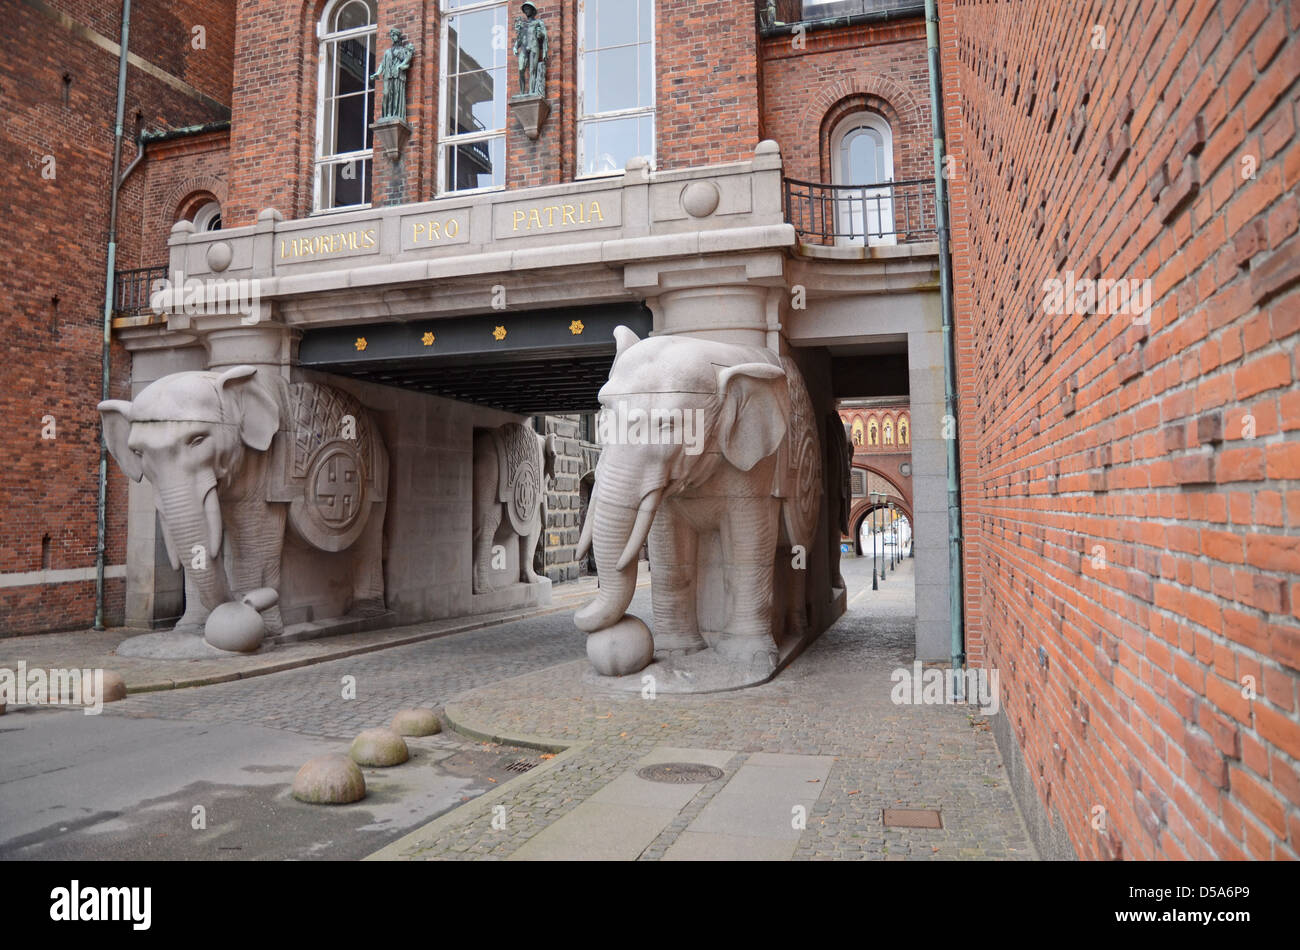 La porte de l'éléphant de la brasserie Carlsberg à Copenhague, Danemark Banque D'Images